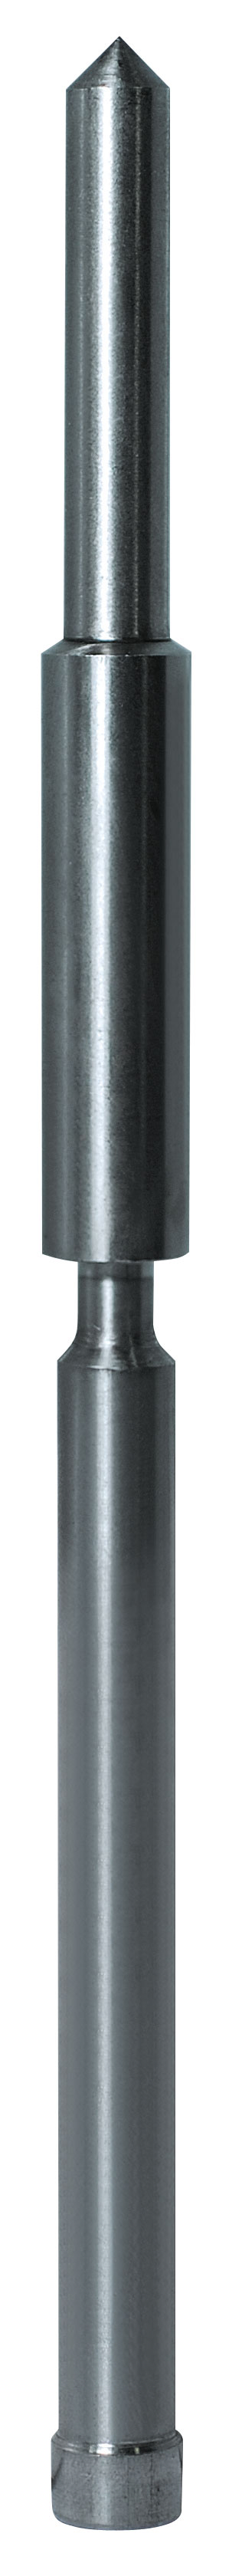 Auswerferstift zweiteilig Ø 7,98 x 157 mm - Auswerferstift für Kernbohrer